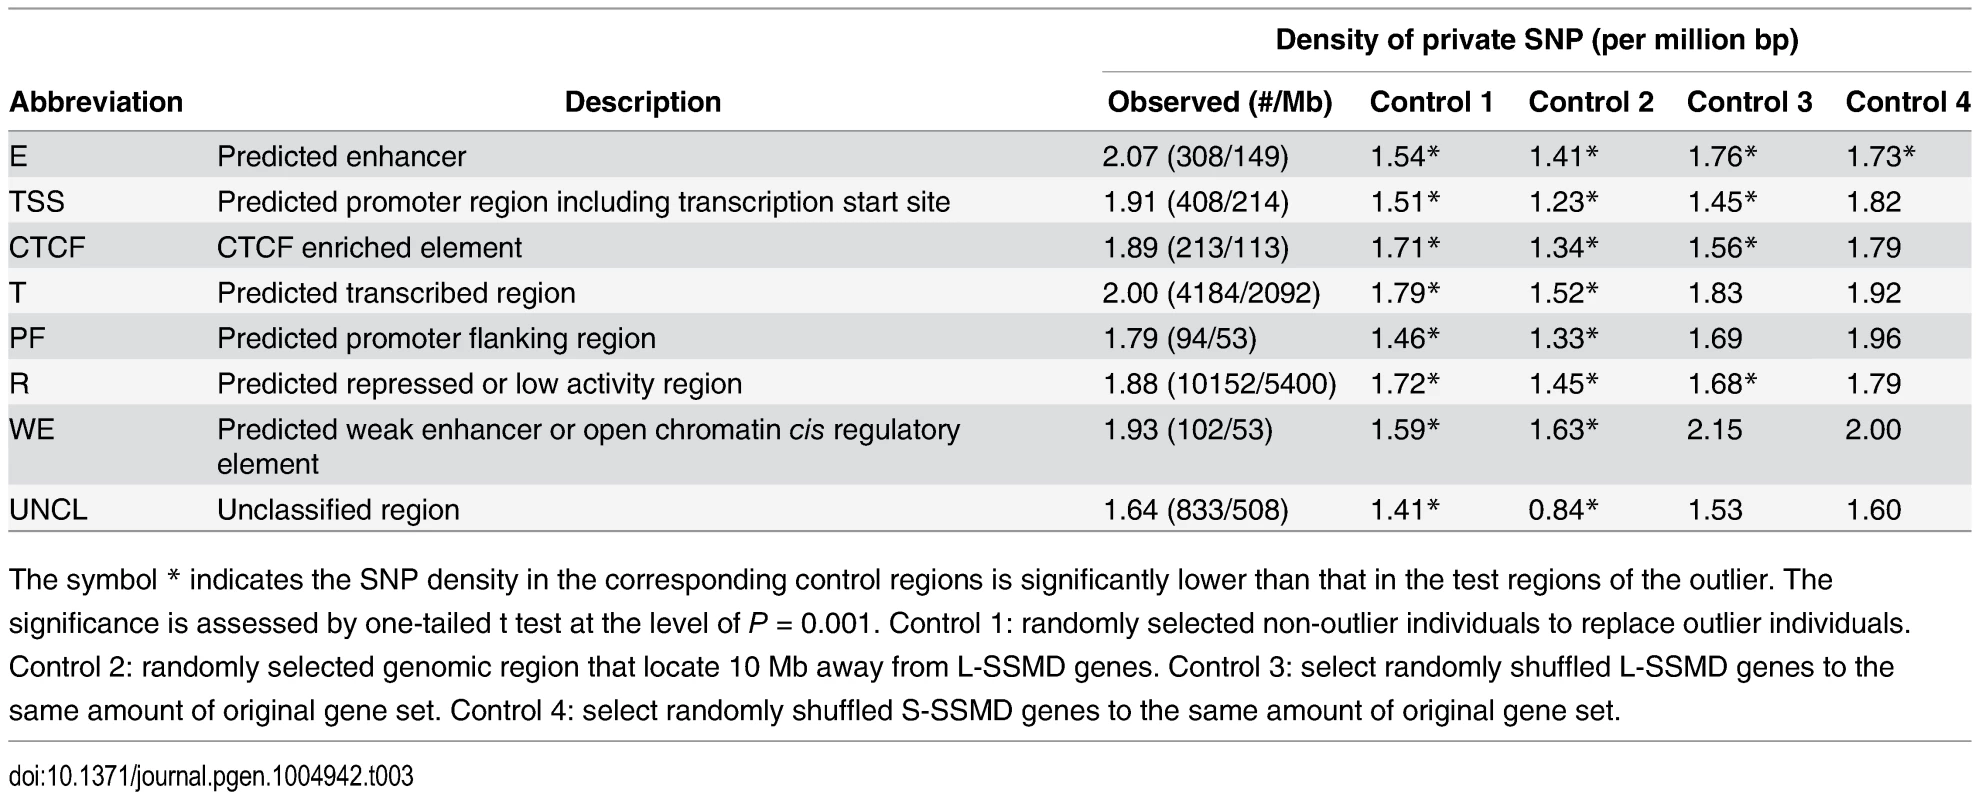 Density of private SNPs in ENCODE regulatory regions of L-SSMD genes.